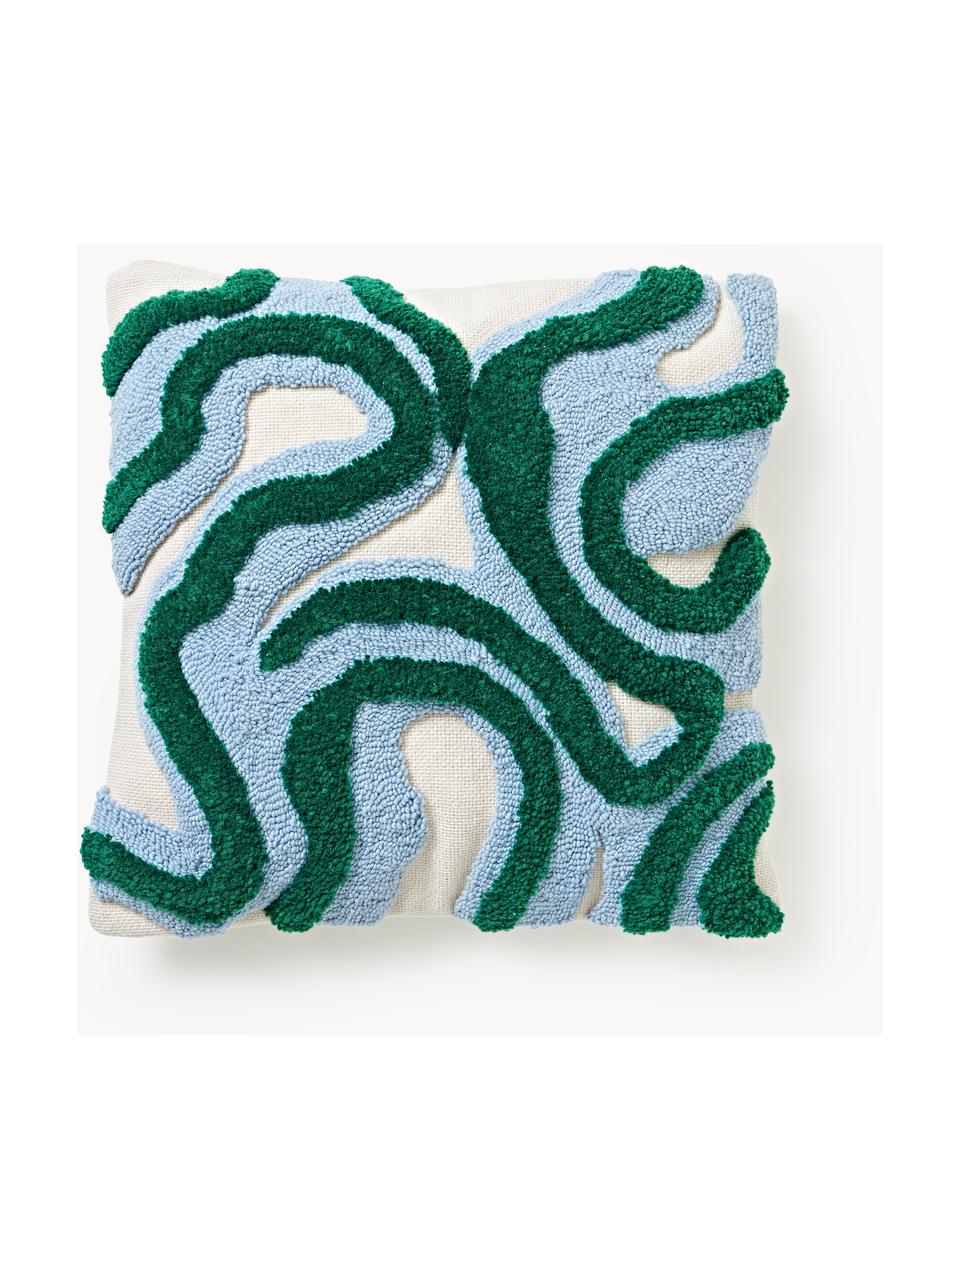 Copricuscino con decoro capitonné Jiri, Retro: 100% cotone, Verde scuro, azzurro, Larg. 50 x Lung. 50 cm